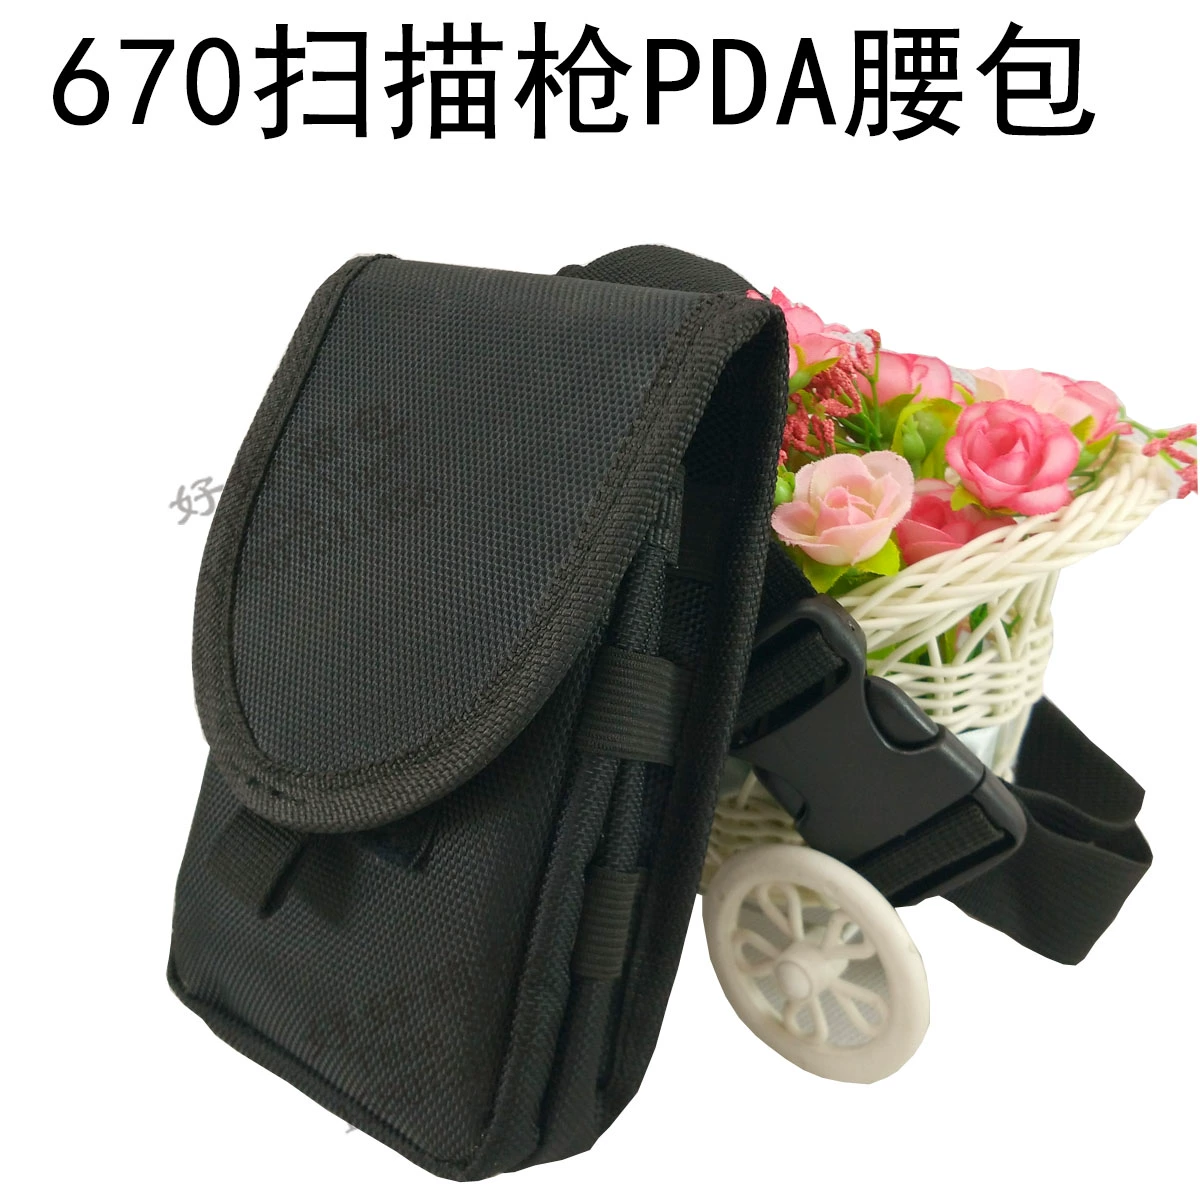 Mu Hong Baoye 670 súng quét điện thoại di động PDA túi nghệ thuật thể hiện dịch vụ điện thoại di động túi công cụ lưu trữ túi - Túi